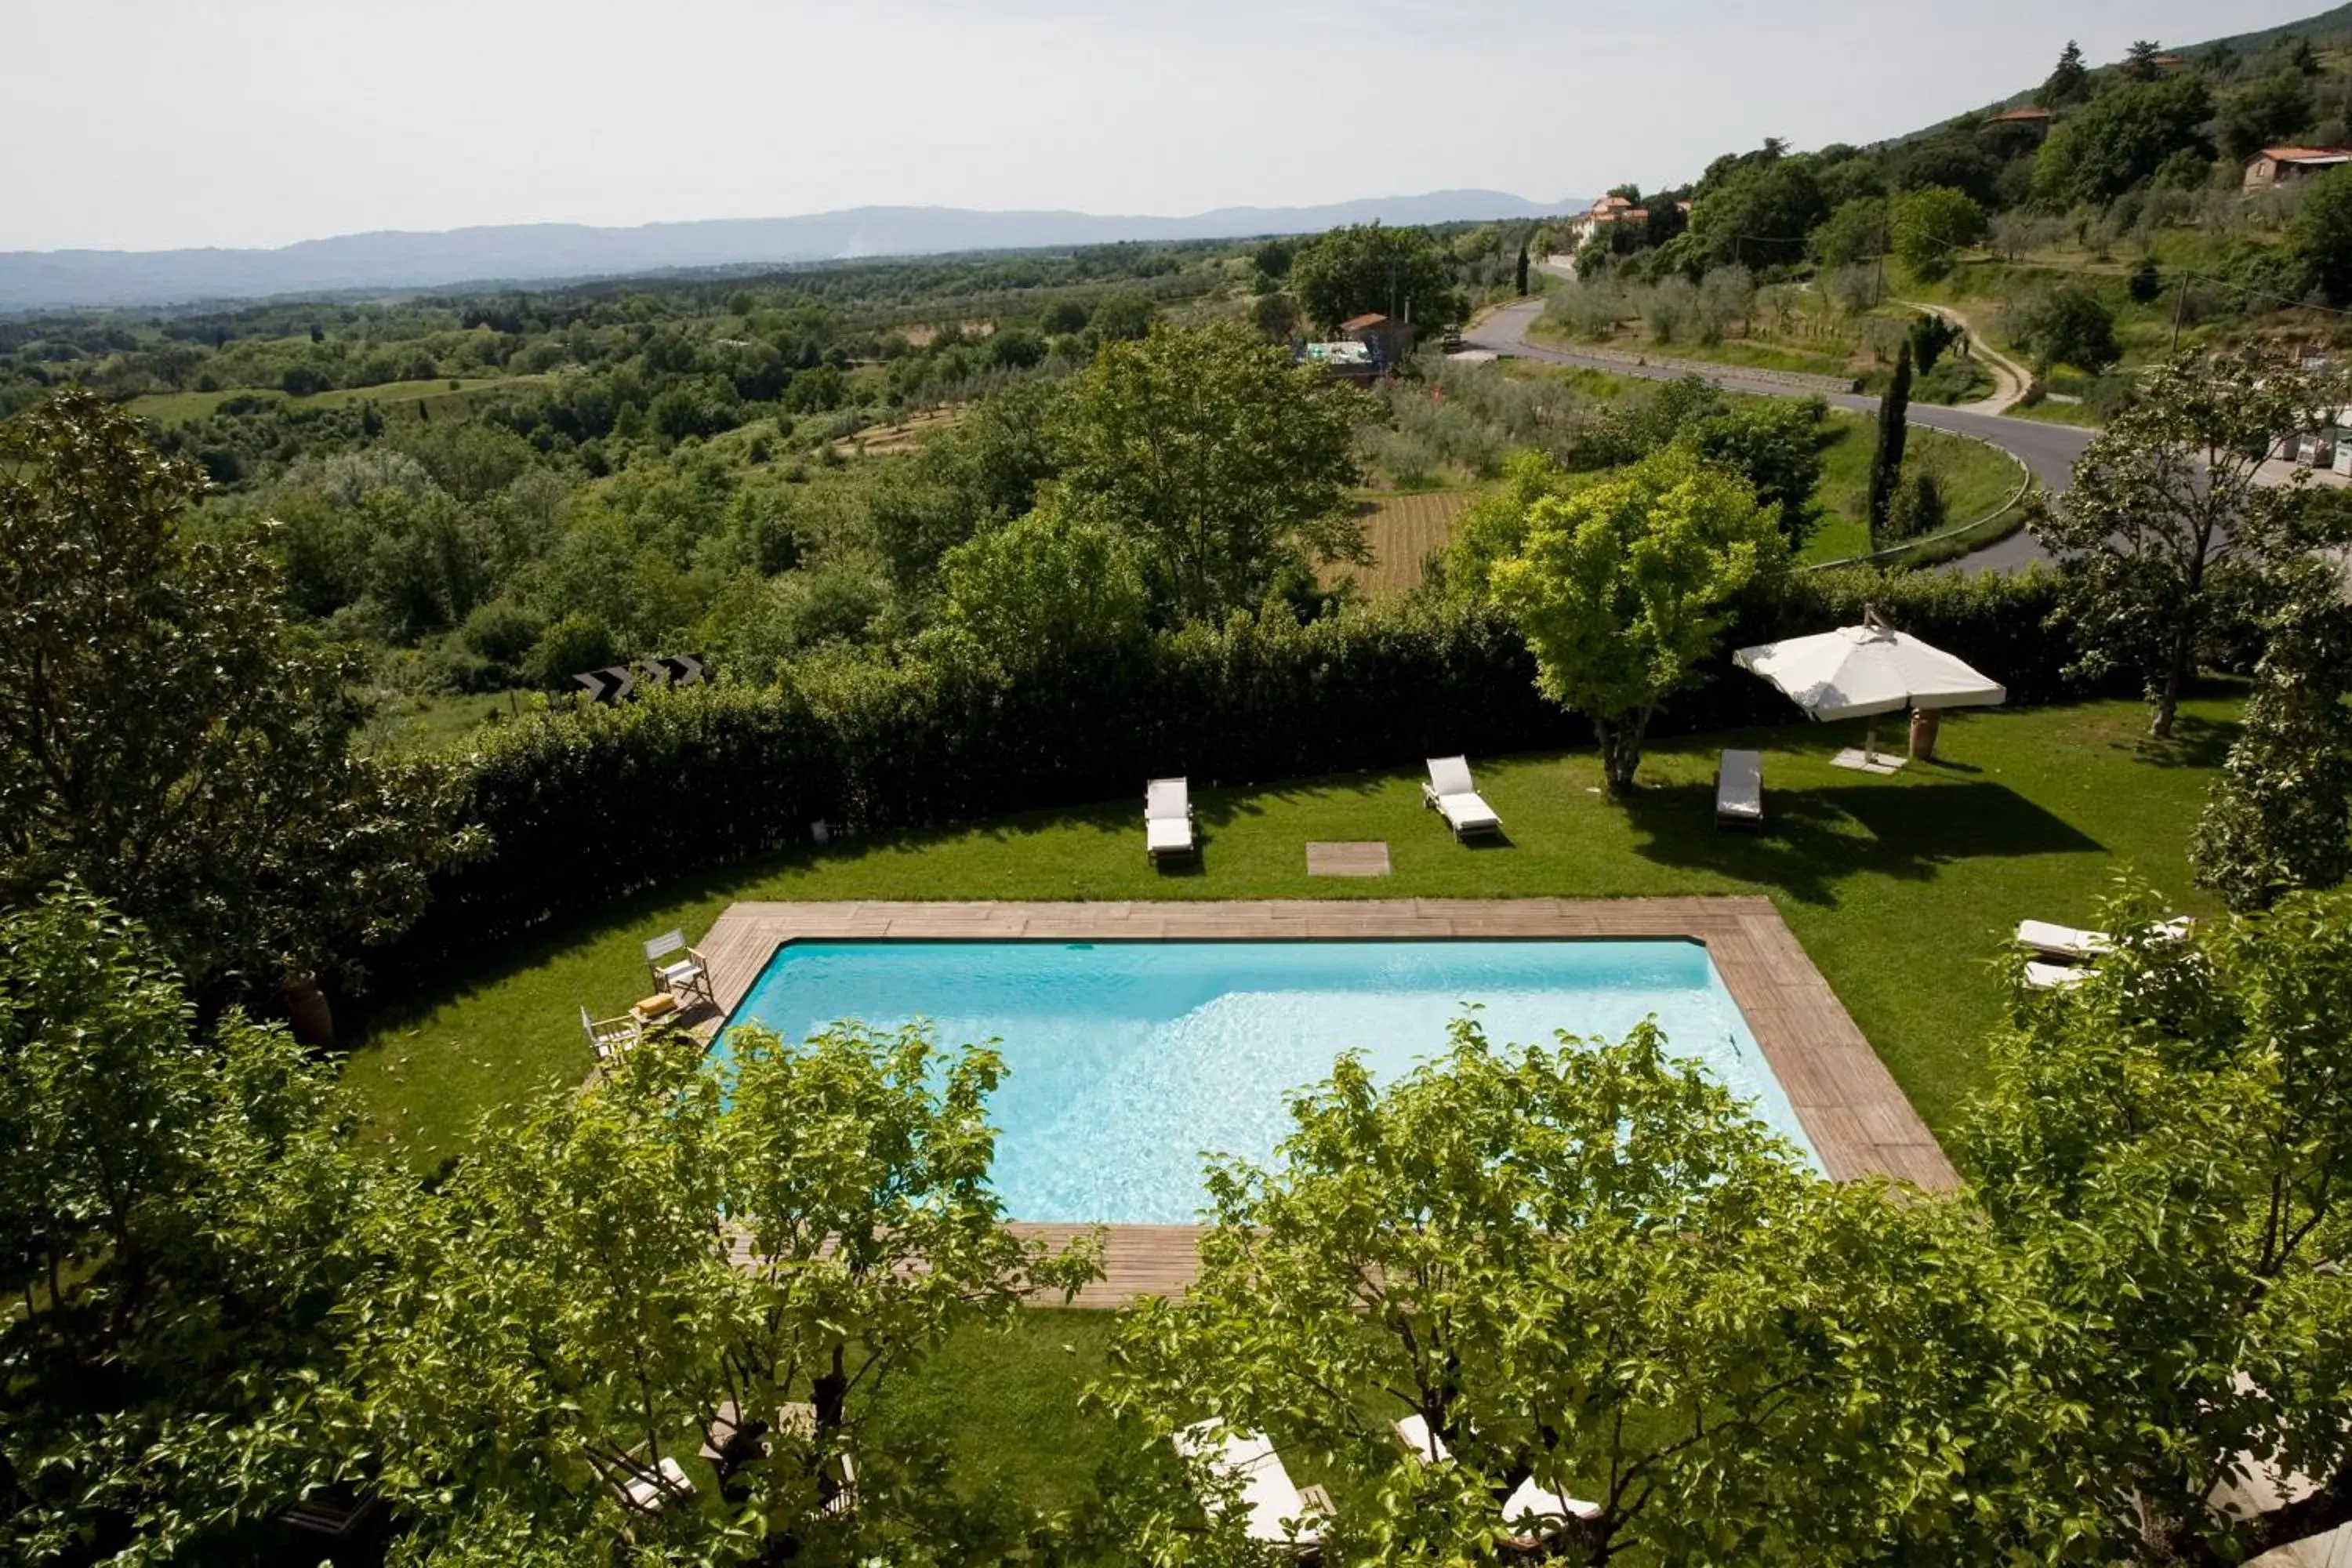 Swimming pool, Pool View in Villa Cassia di Baccano